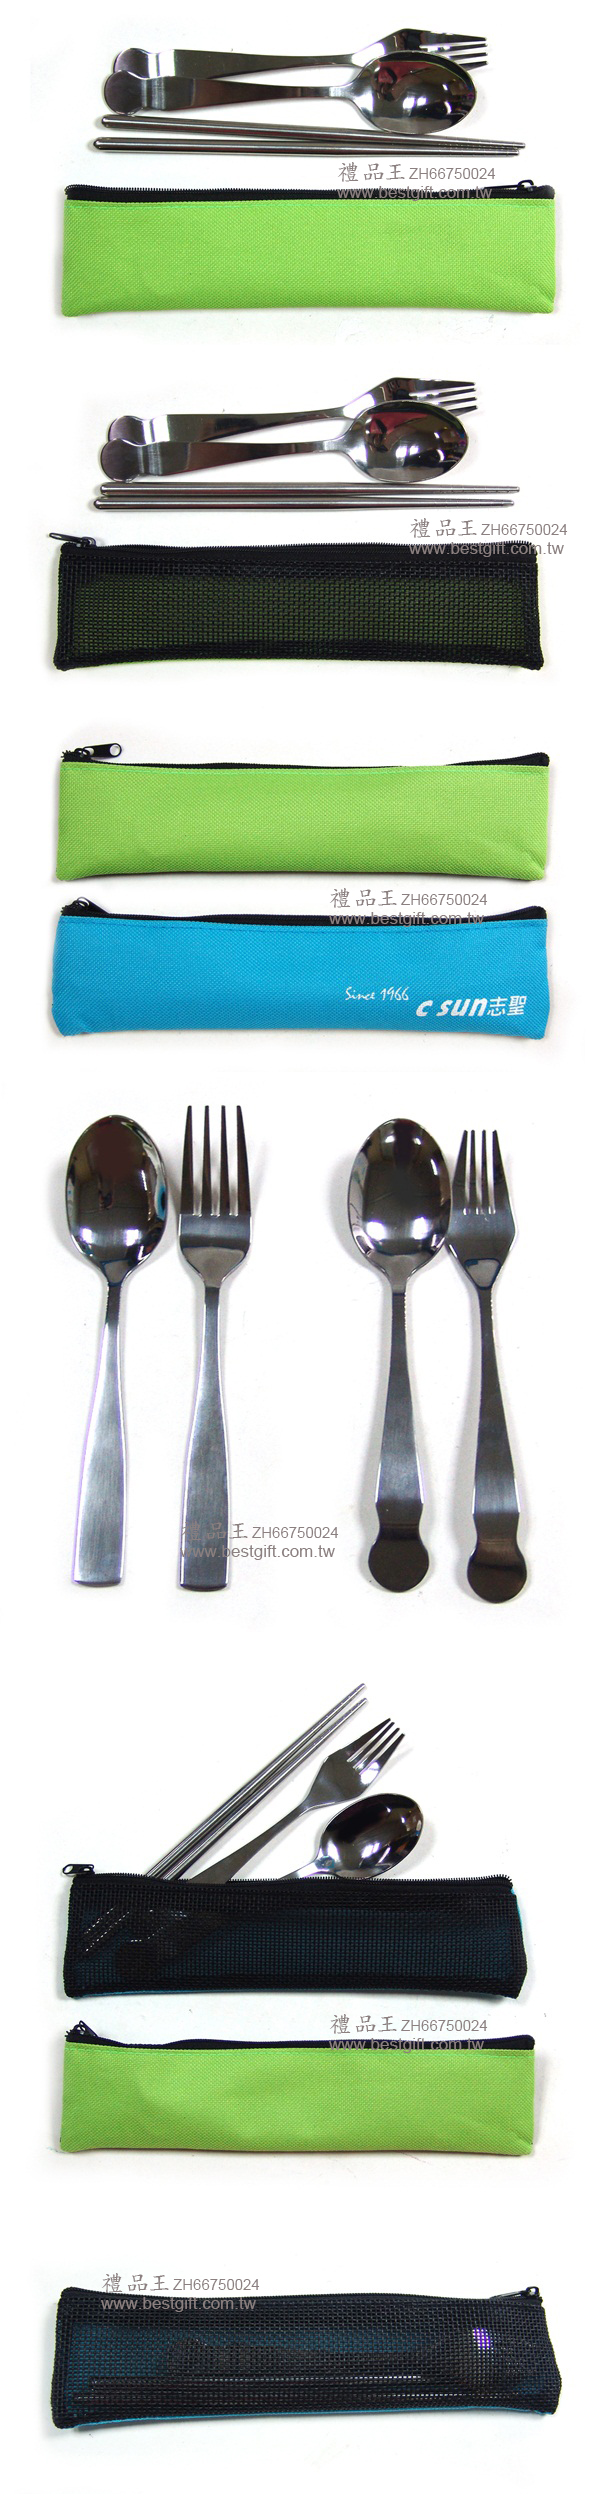 網袋三件式環保餐具   商品貨號:ZH66750024